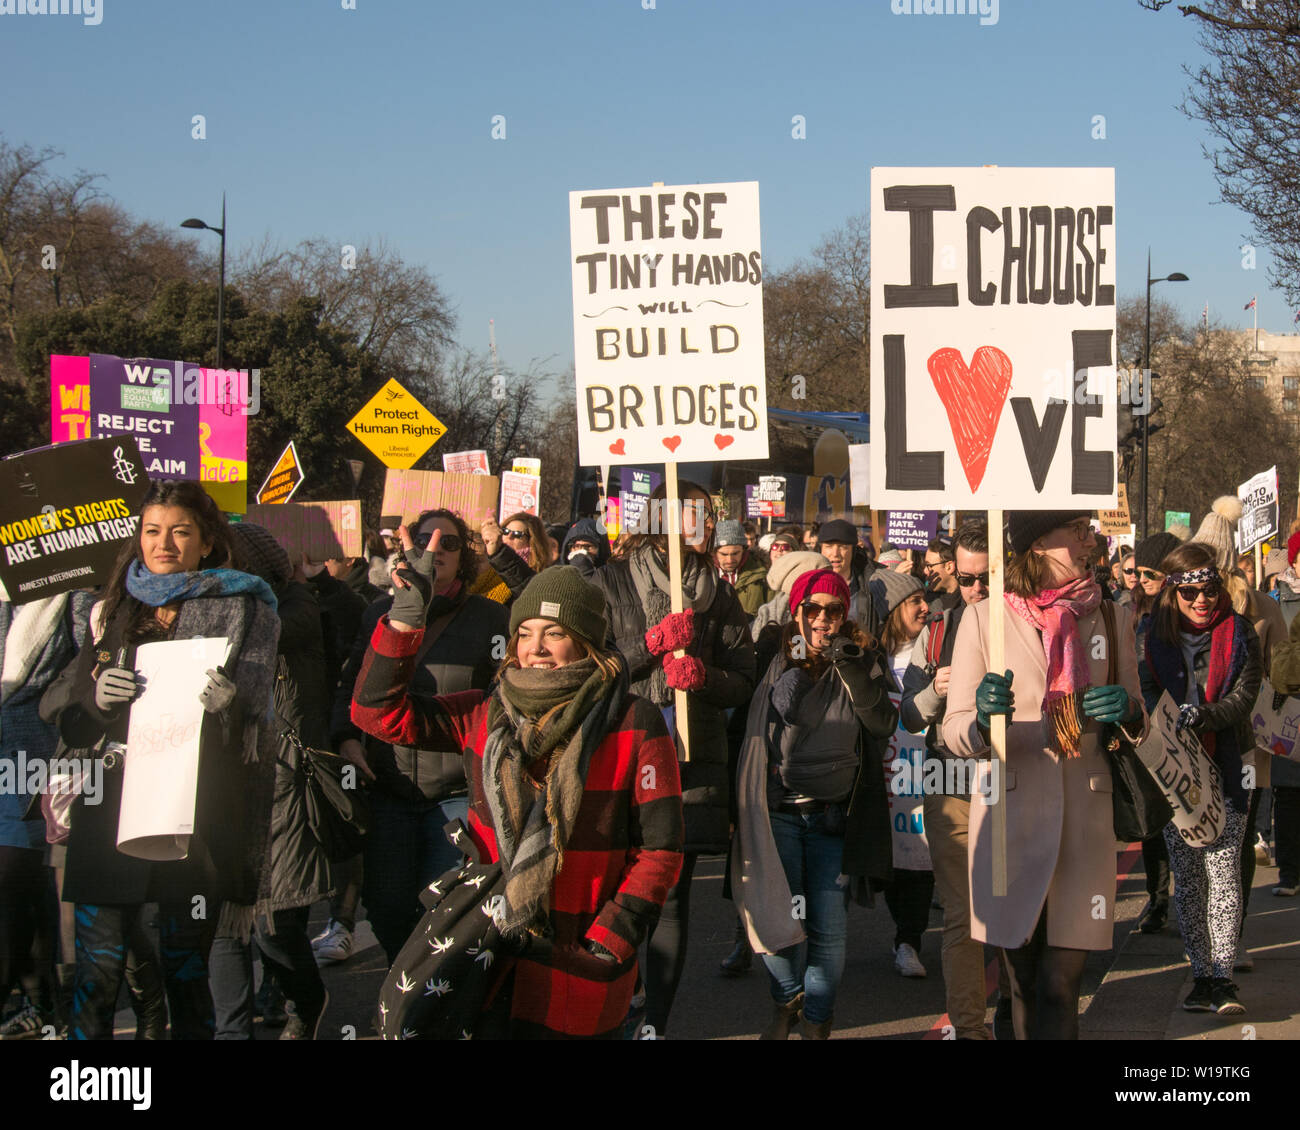 La Marche des femmes, Londres, Royaume-Uni, 21 janvier 2017. Une femme porte un écriteau qui dit 'Je choisis l'amour' à Londres pour protester contre le jour après l'investiture du président Donald Trump. Jusqu'à 10 000 ont pris part à Londres en tant que femmes dans le monde ont marqué la journée en marchant dans un acte de solidarité internationale. Un autre manifestant porte un écriteau qui dit "Ces petites mains vont construire des ponts". Banque D'Images